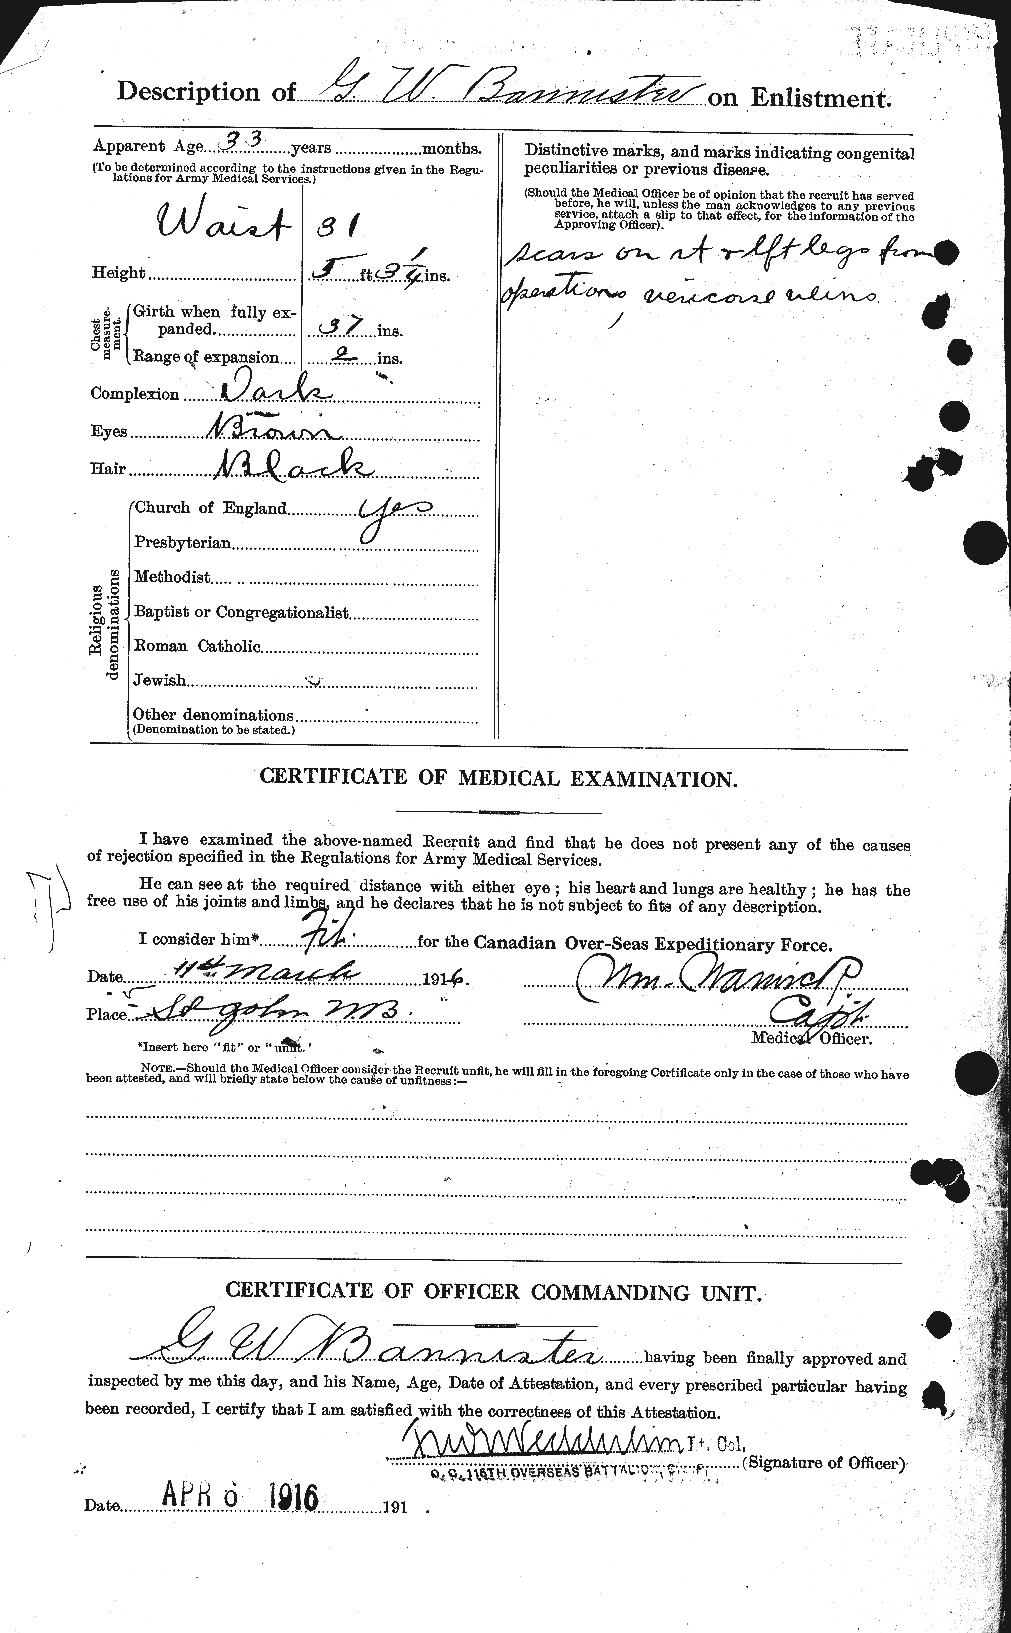 Dossiers du Personnel de la Première Guerre mondiale - CEC 224797b